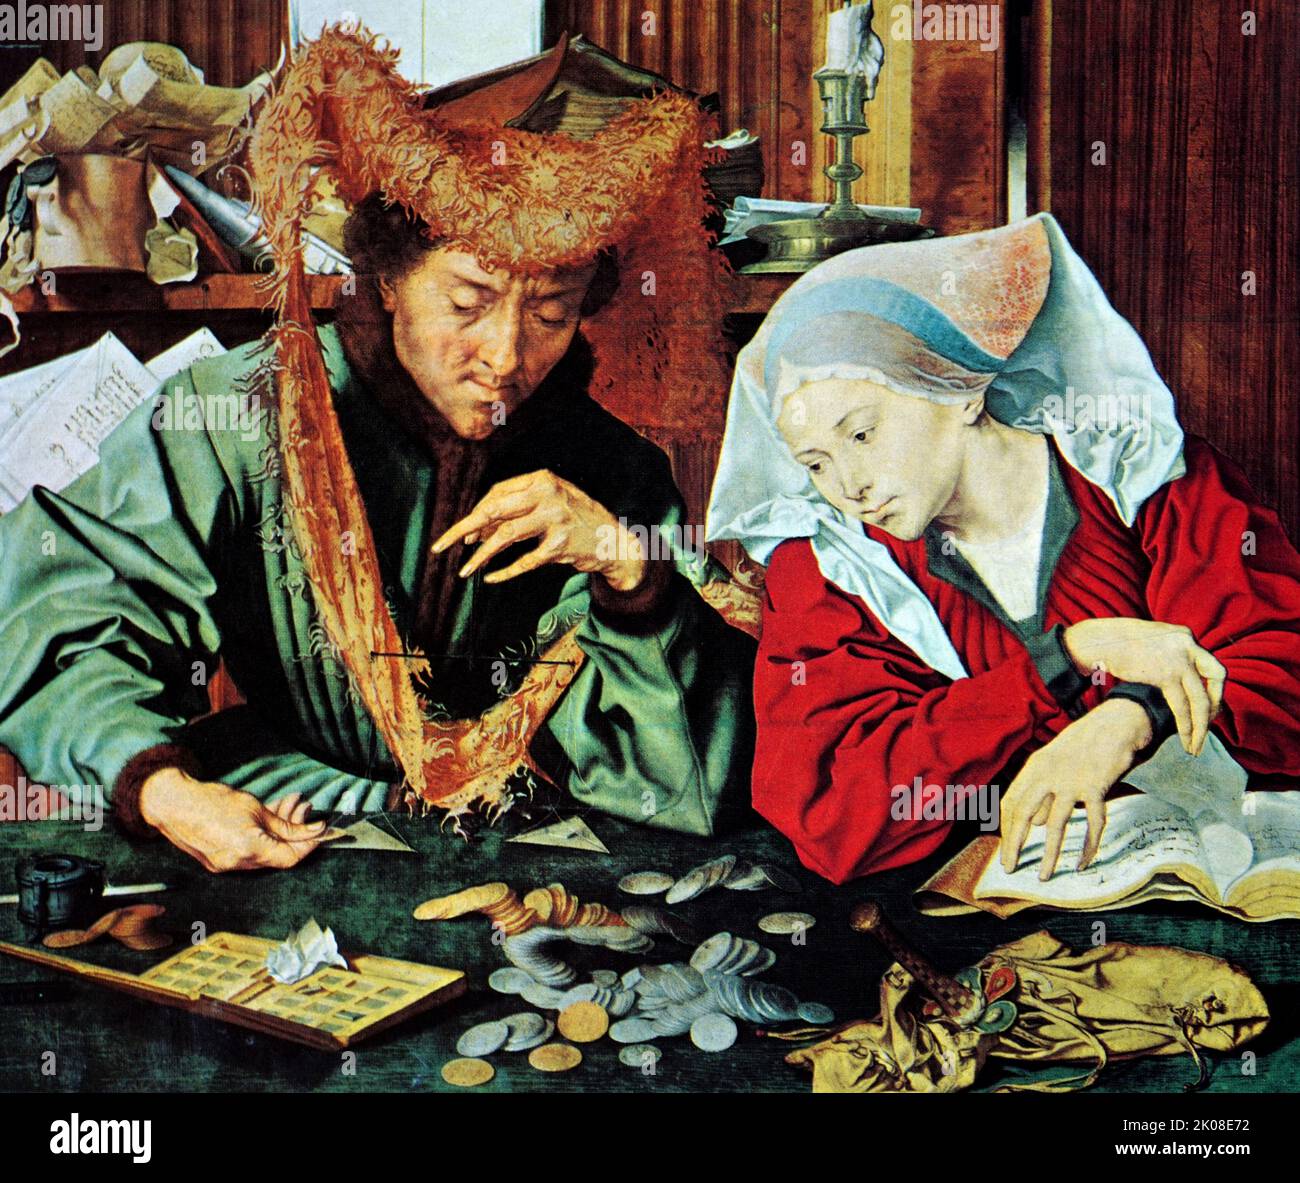 Rico cambiador de dinero y su esposa en la Edad Media, pintado por Marinus van Reymerswaele o Marinus van Reymerswale (c.1490 - c. 1546) fue un pintor renacentista holandés conocido principalmente por sus escenas de género y composiciones religiosas Foto de stock